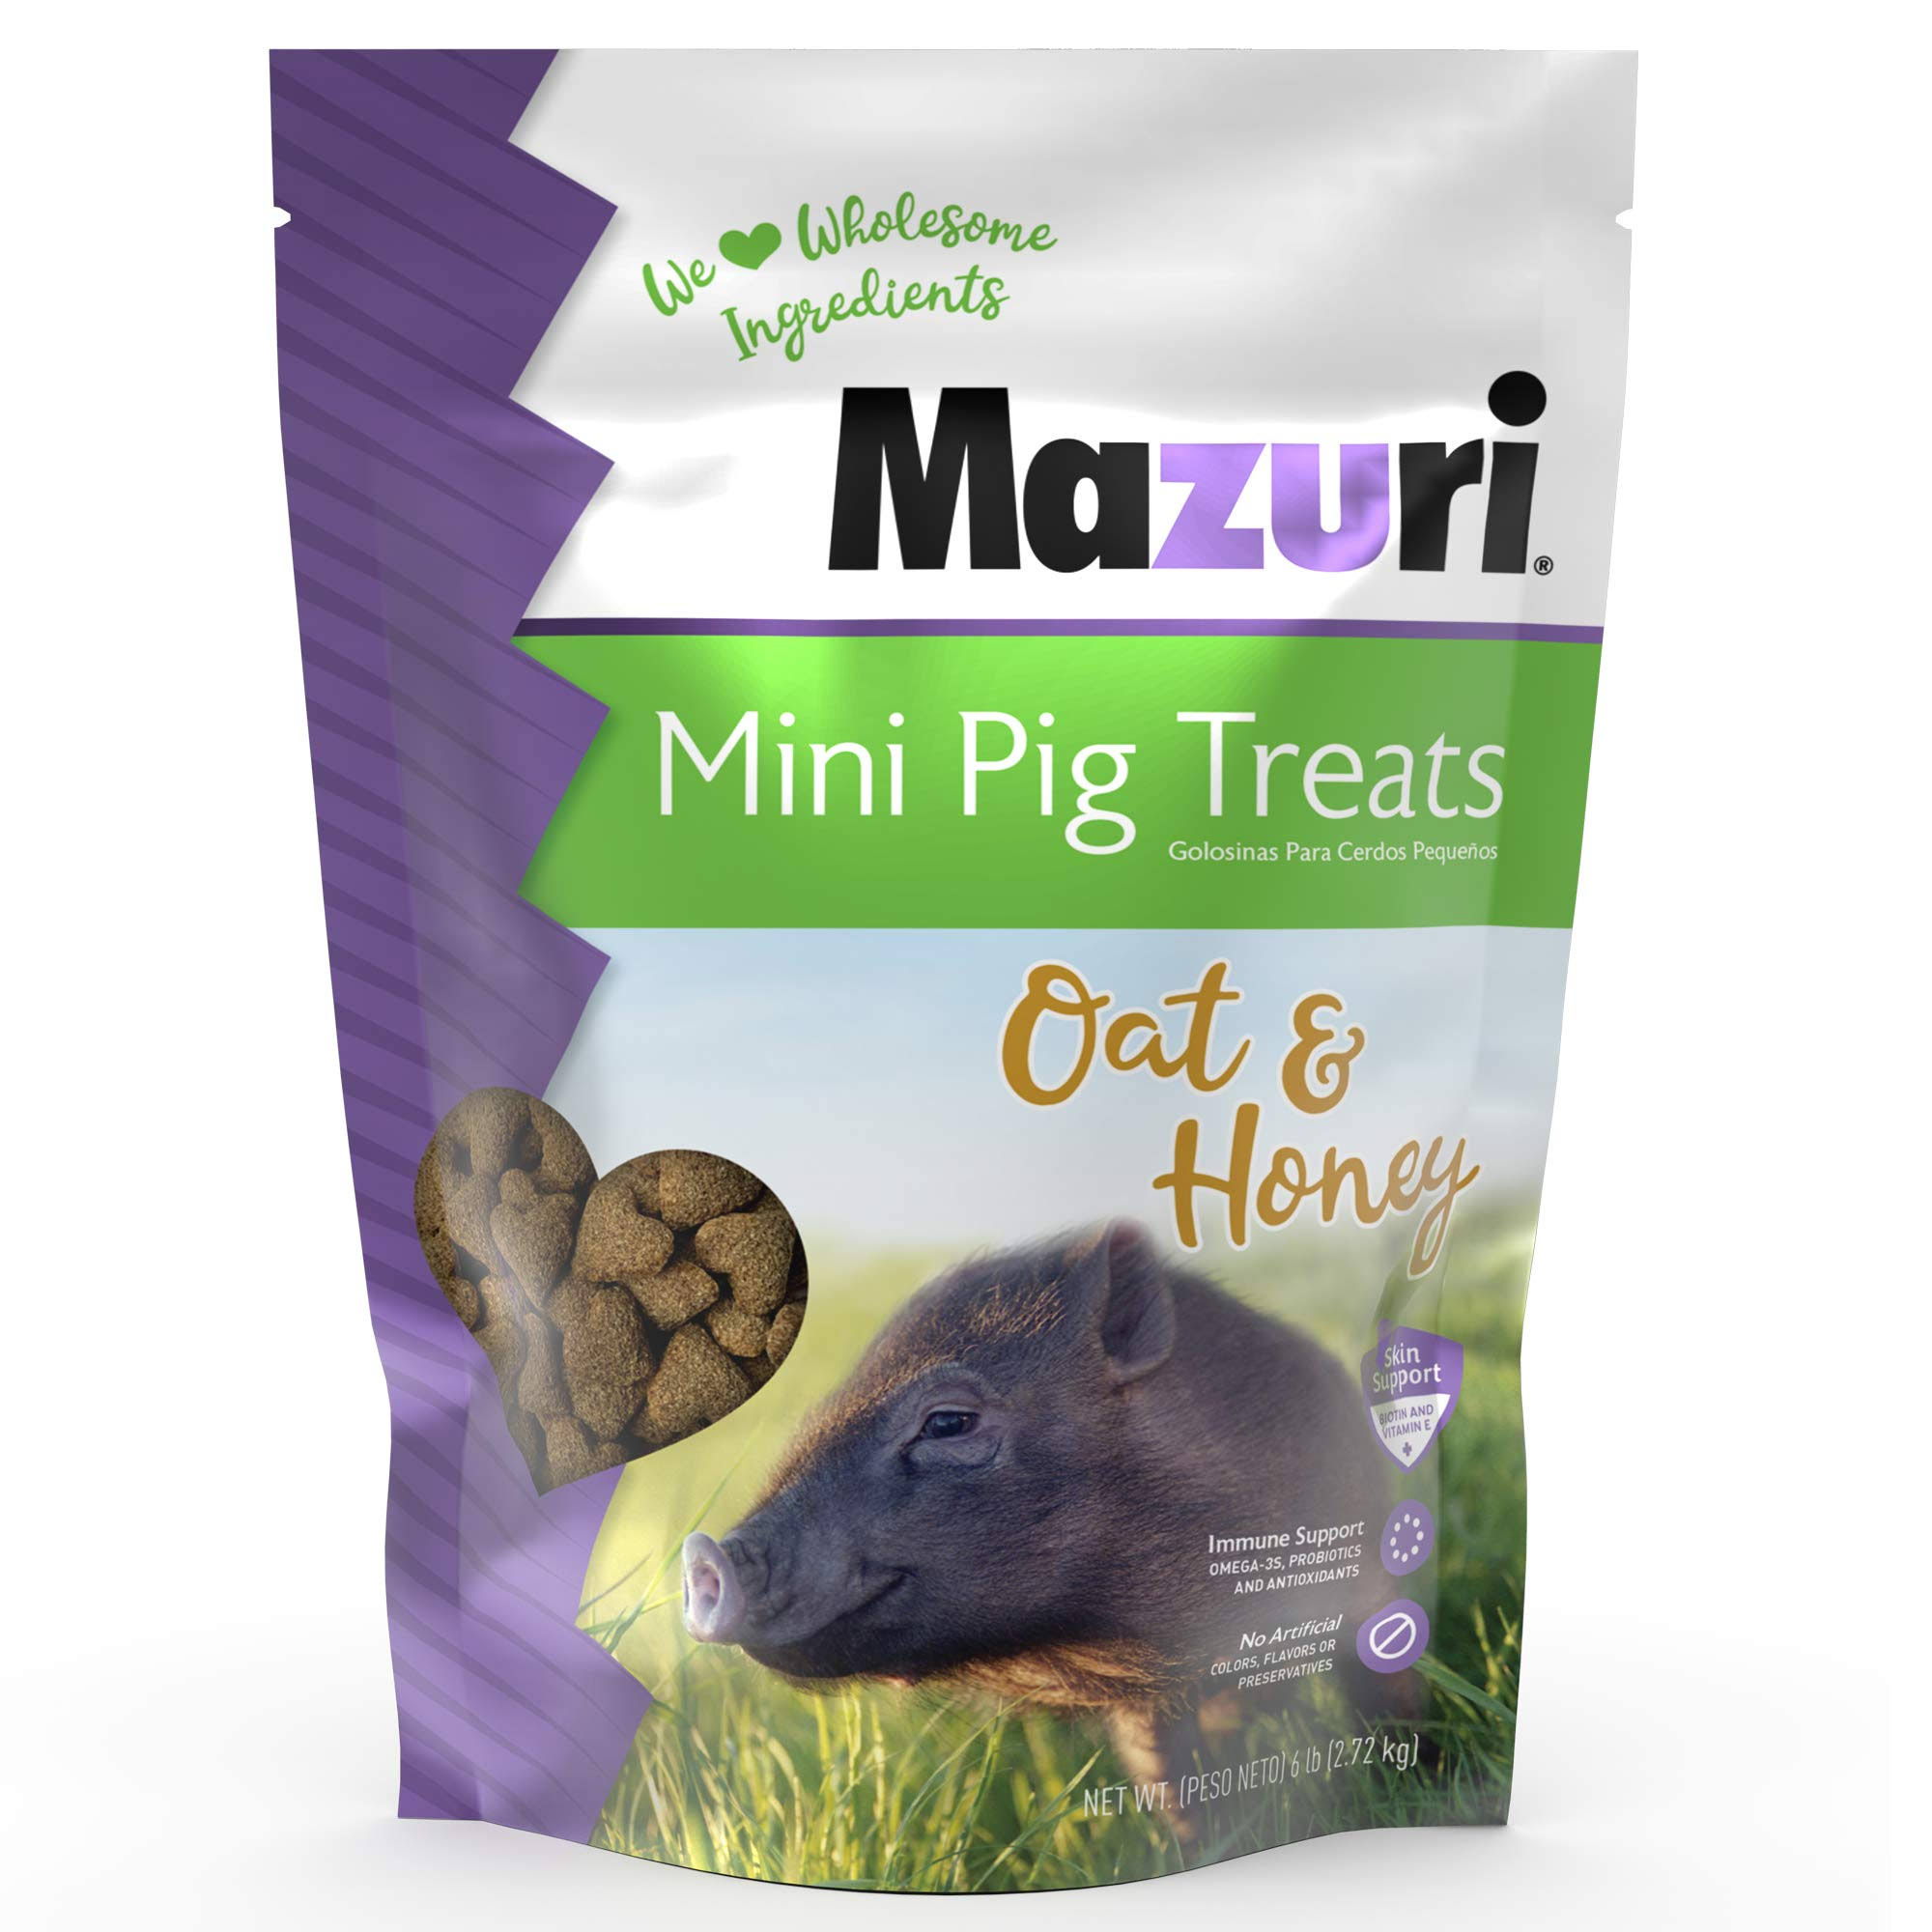 Mazuri Oat & Honey Mini Pig Treats, 6 lbs.